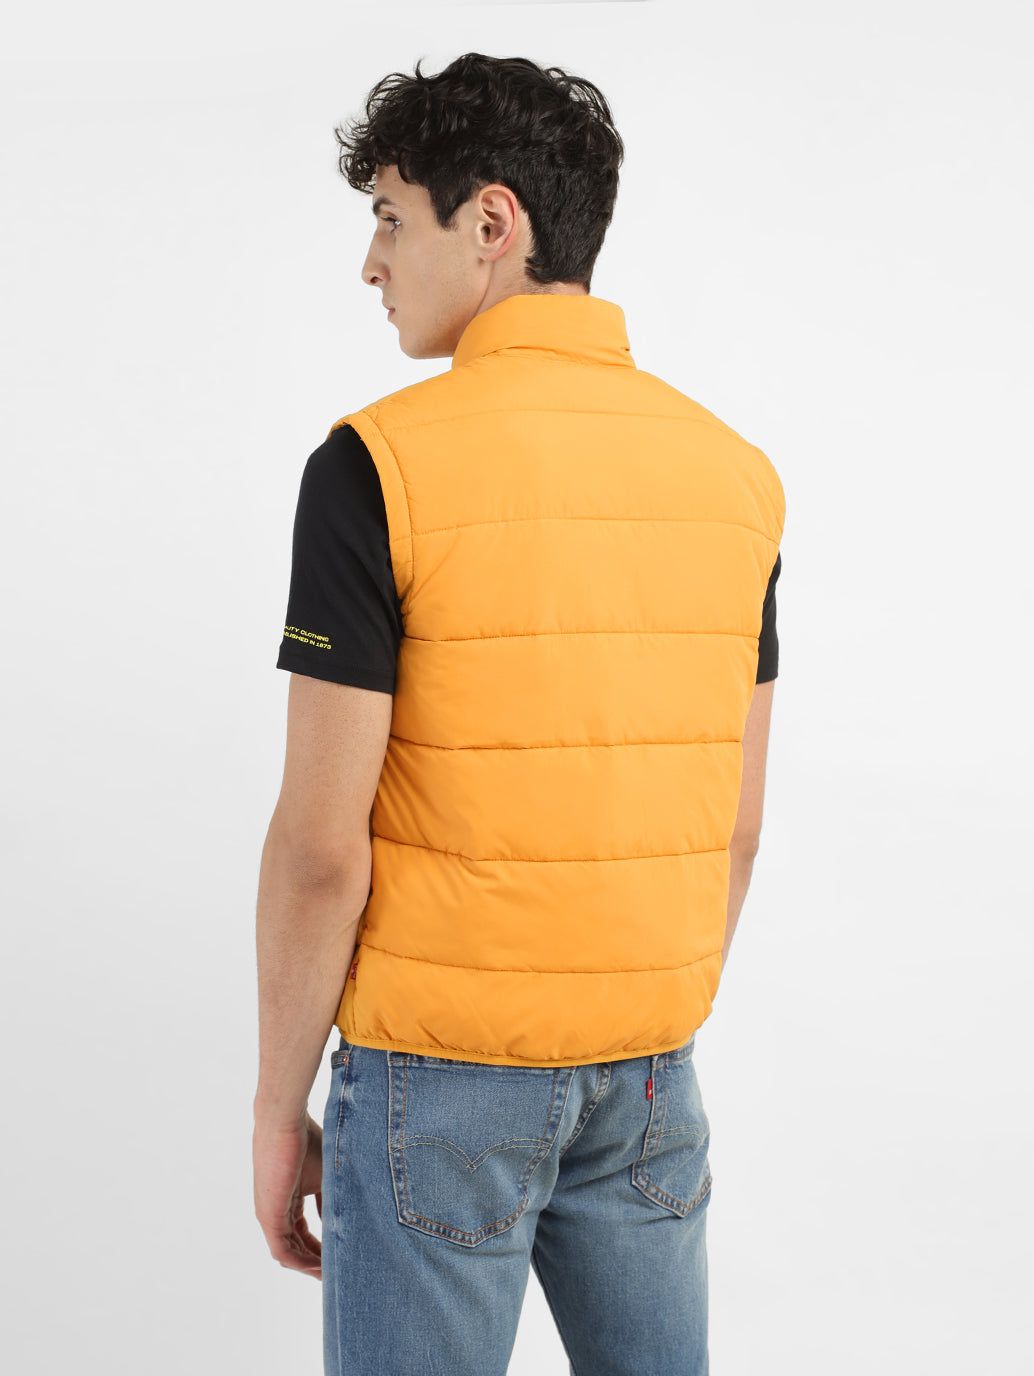 Men's Yellow High Neck Puffer Jackets